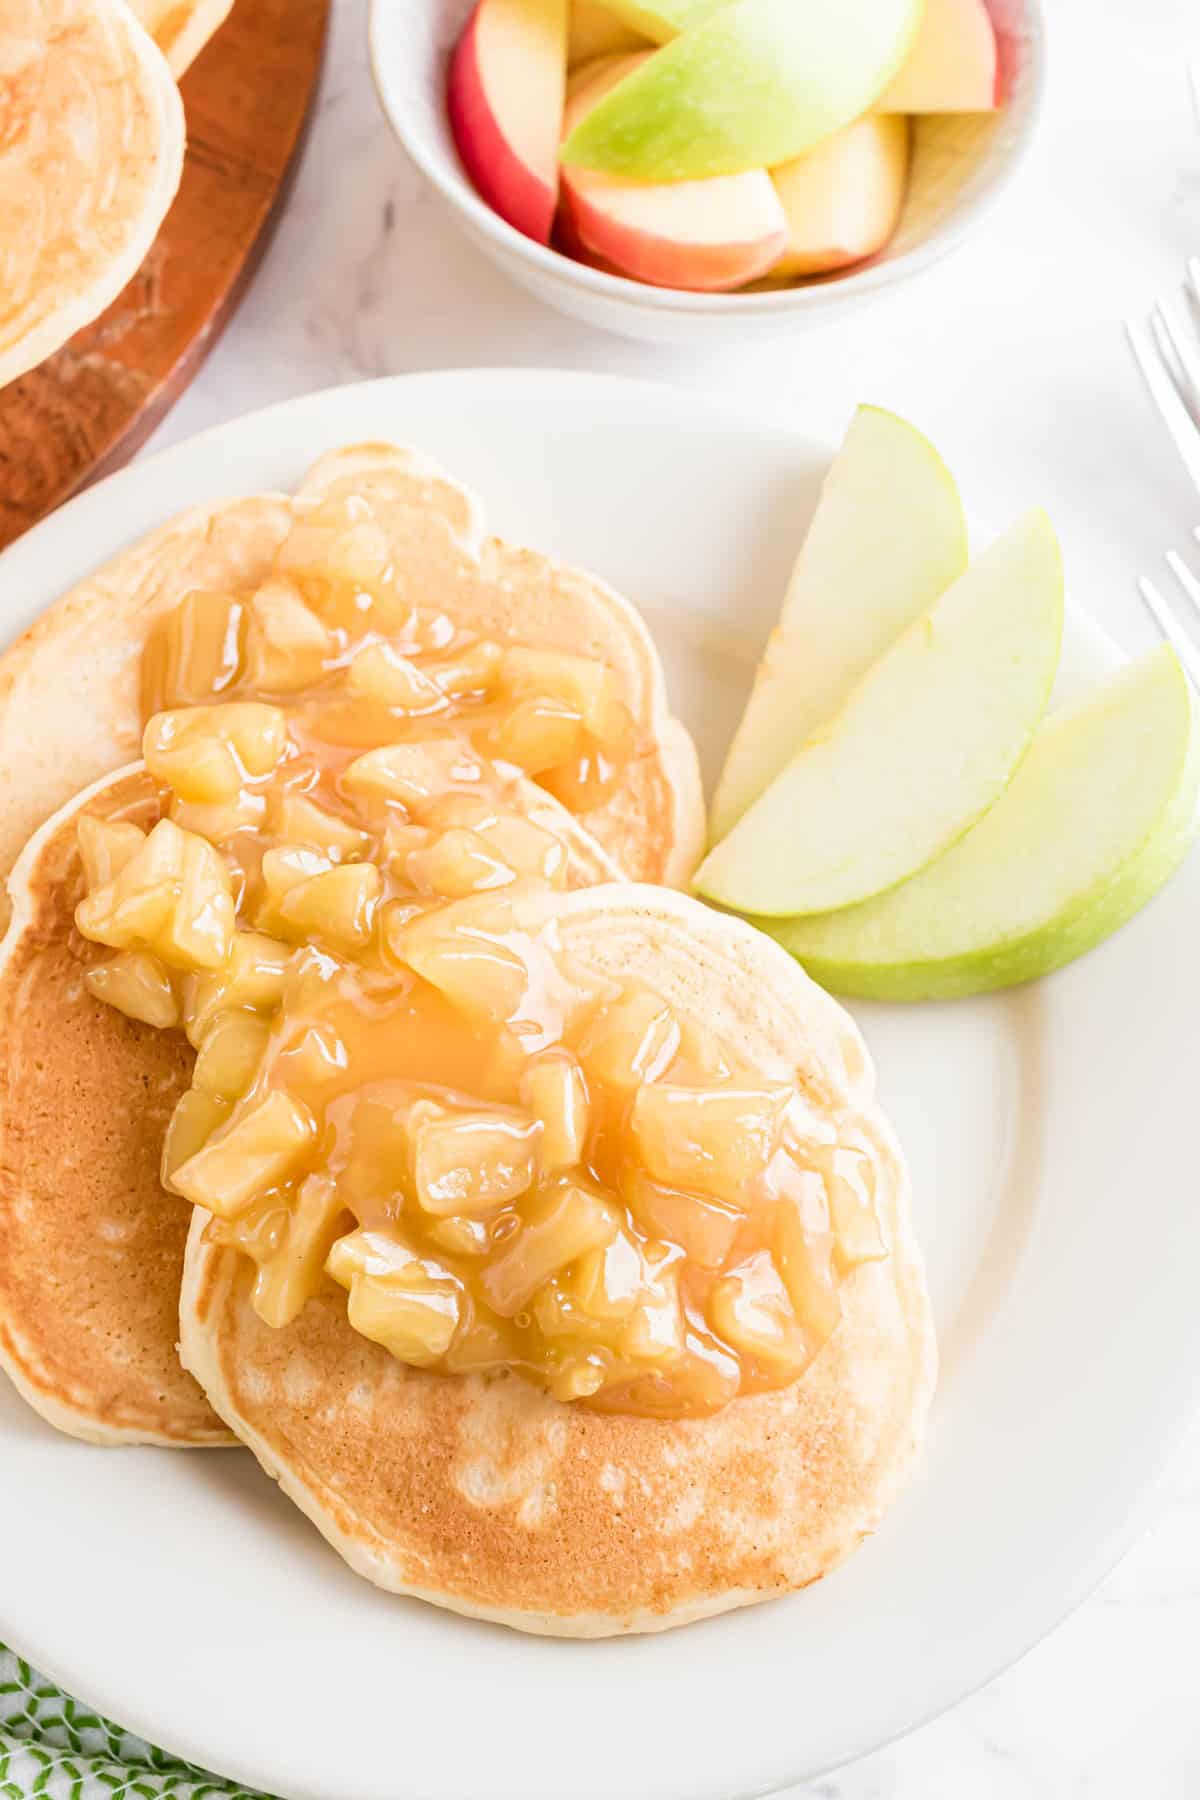 Pancakes with caramel apple sauce.